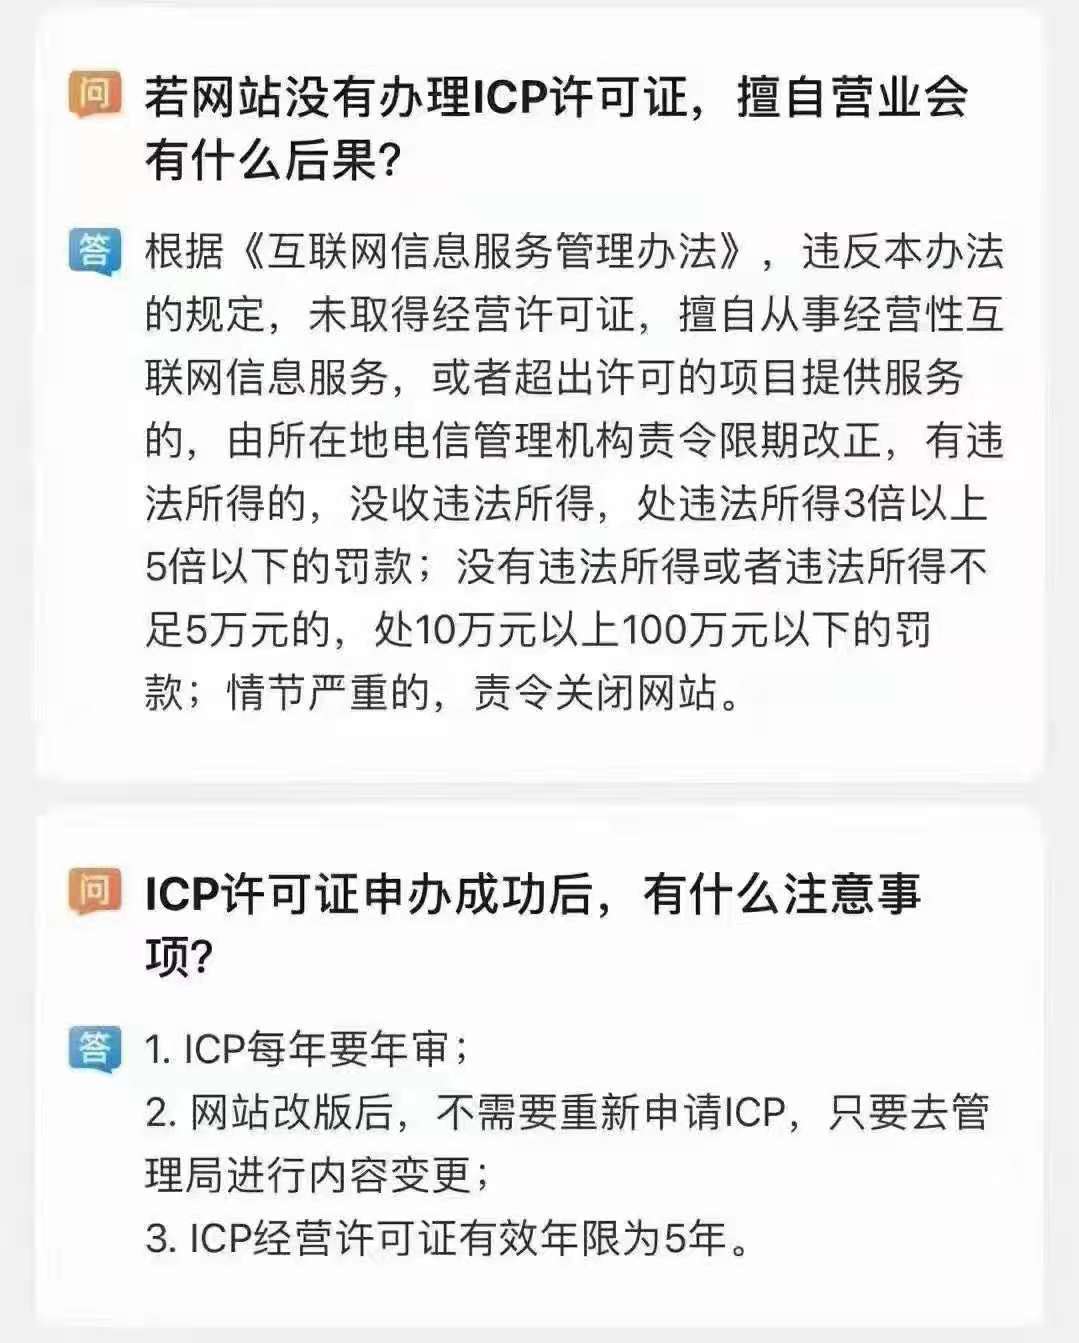 深圳呼叫中心许可证申请流程手续